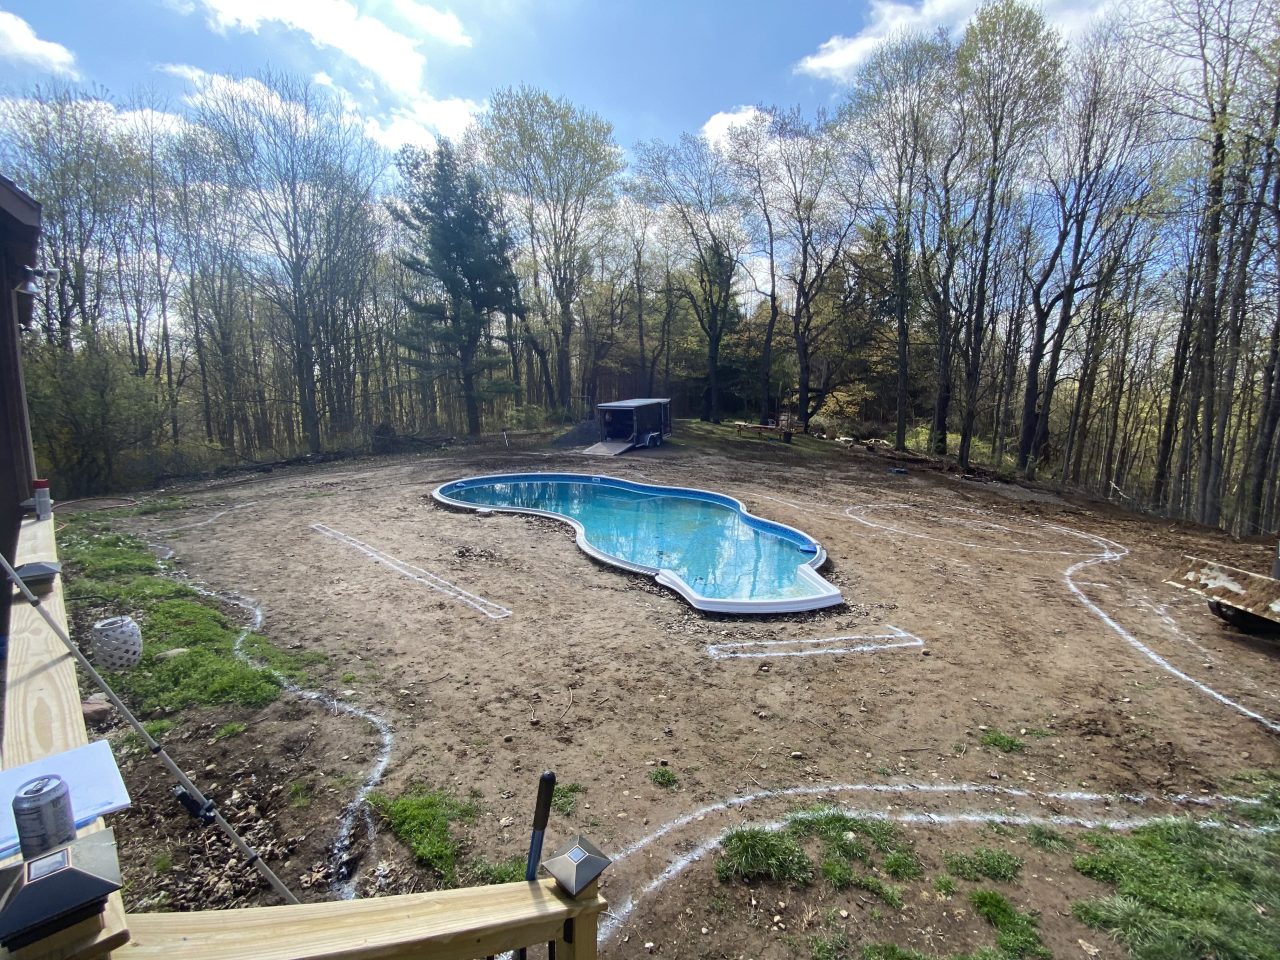 Backyard pool layout